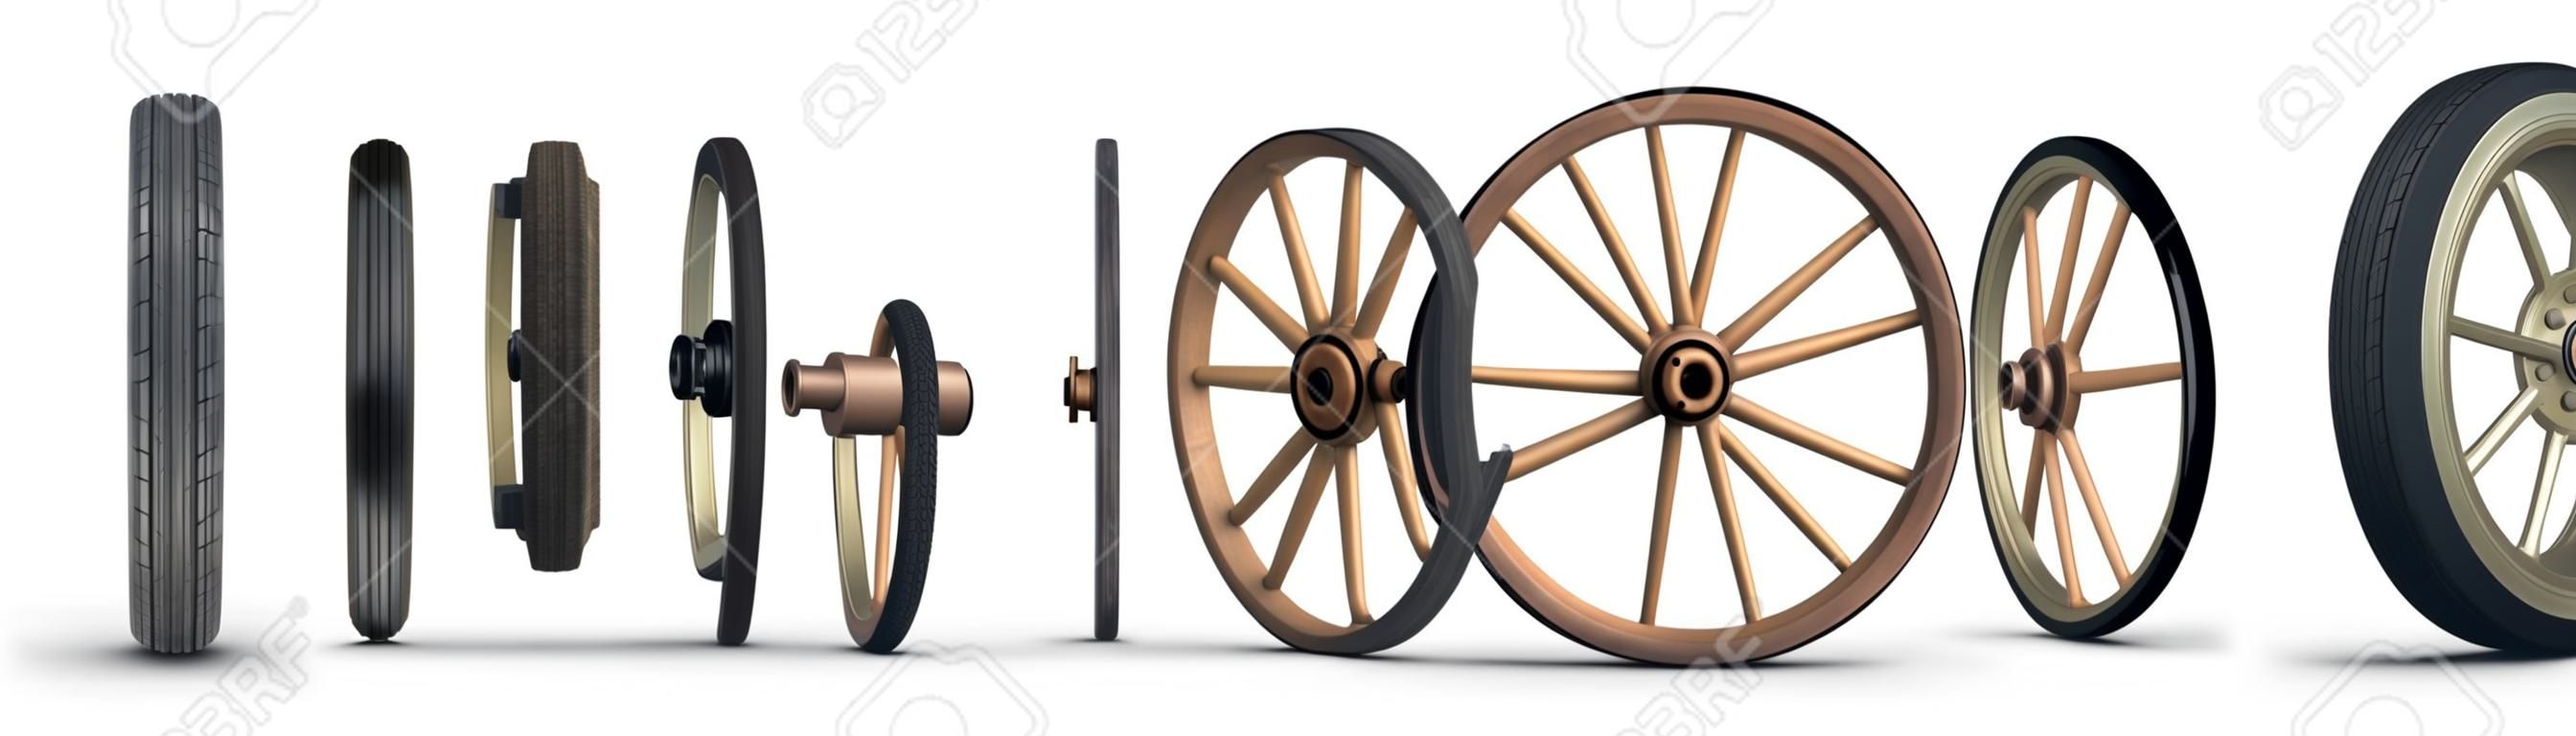 Ilustração mostrando a evolução da roda a partir de uma roda de pedra e terminando com um pneu radial com cinto de aço. Filmado em um fundo branco.